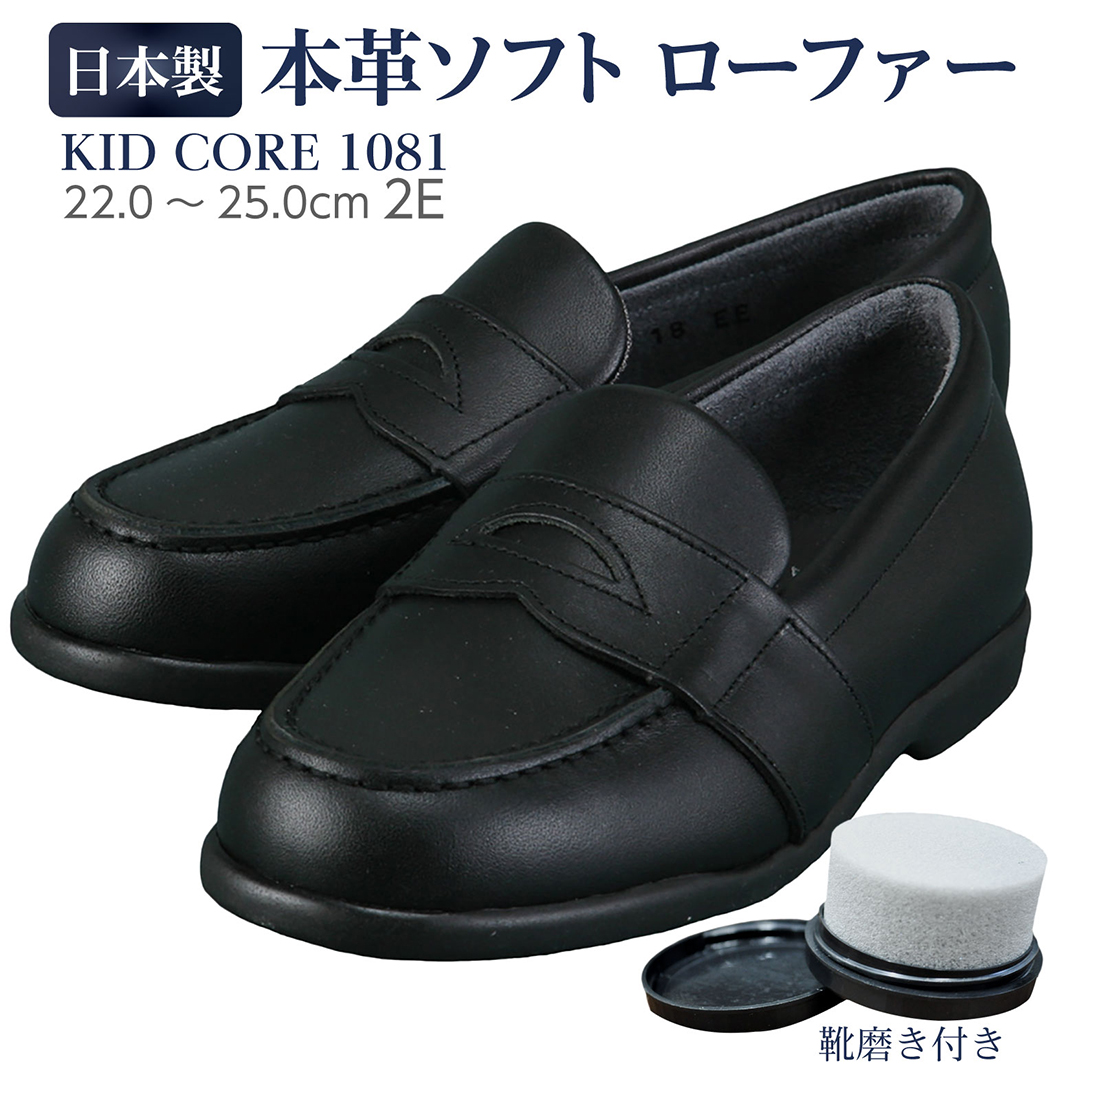 百貨店取扱い 正規品 KID CORE キッドコア 靴磨きセット 日本製本革